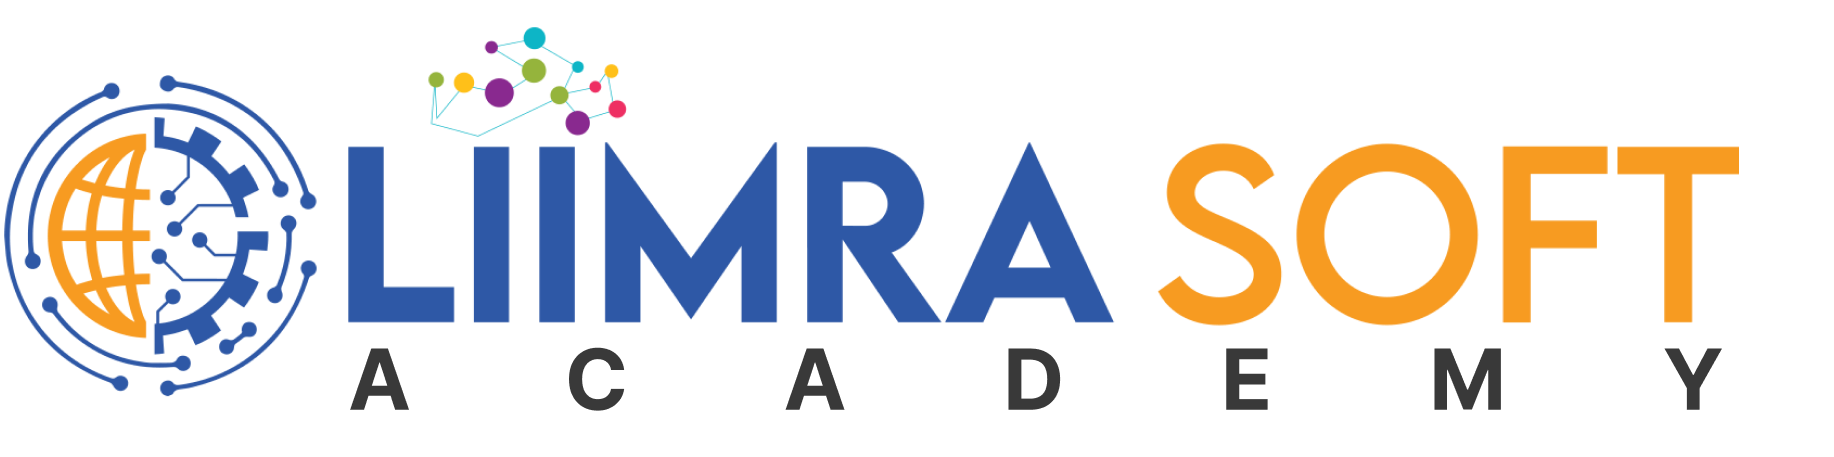 Liimrasoft Academy Logo